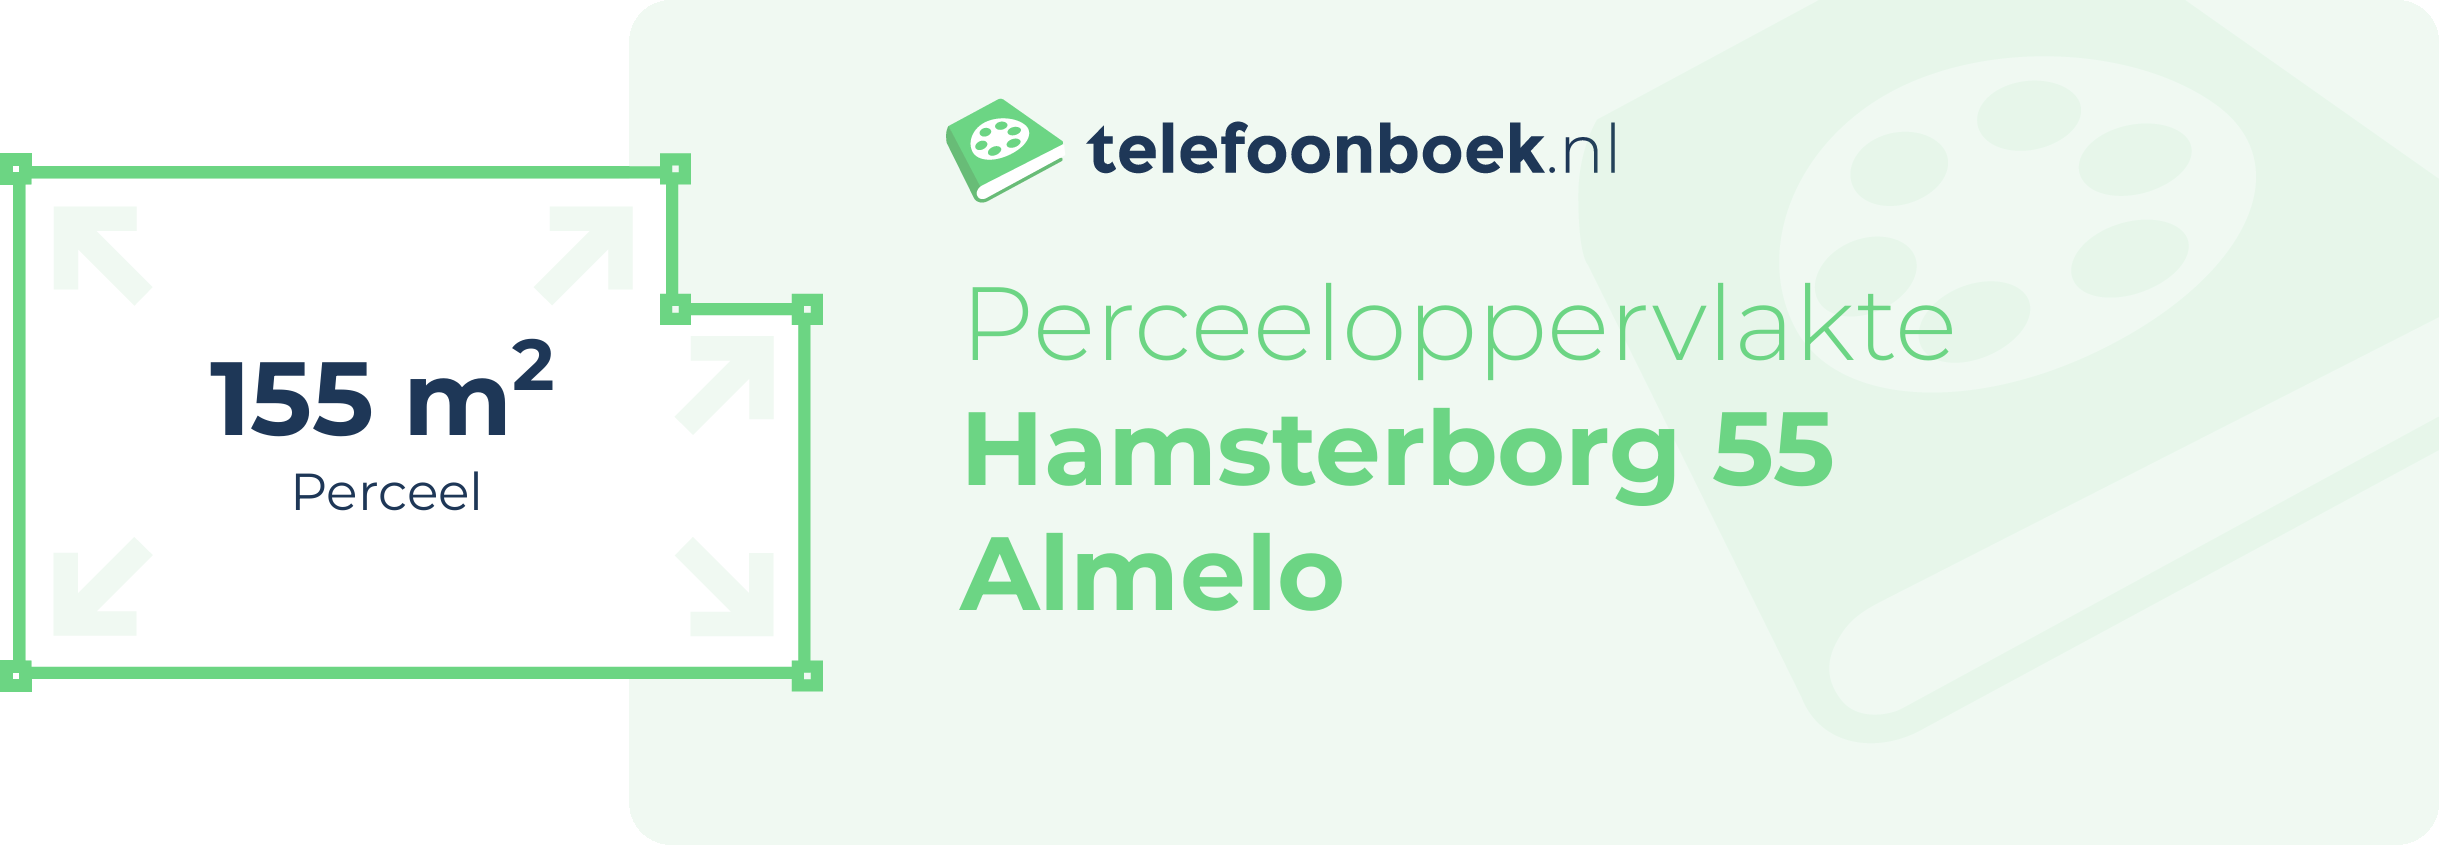 Perceeloppervlakte Hamsterborg 55 Almelo